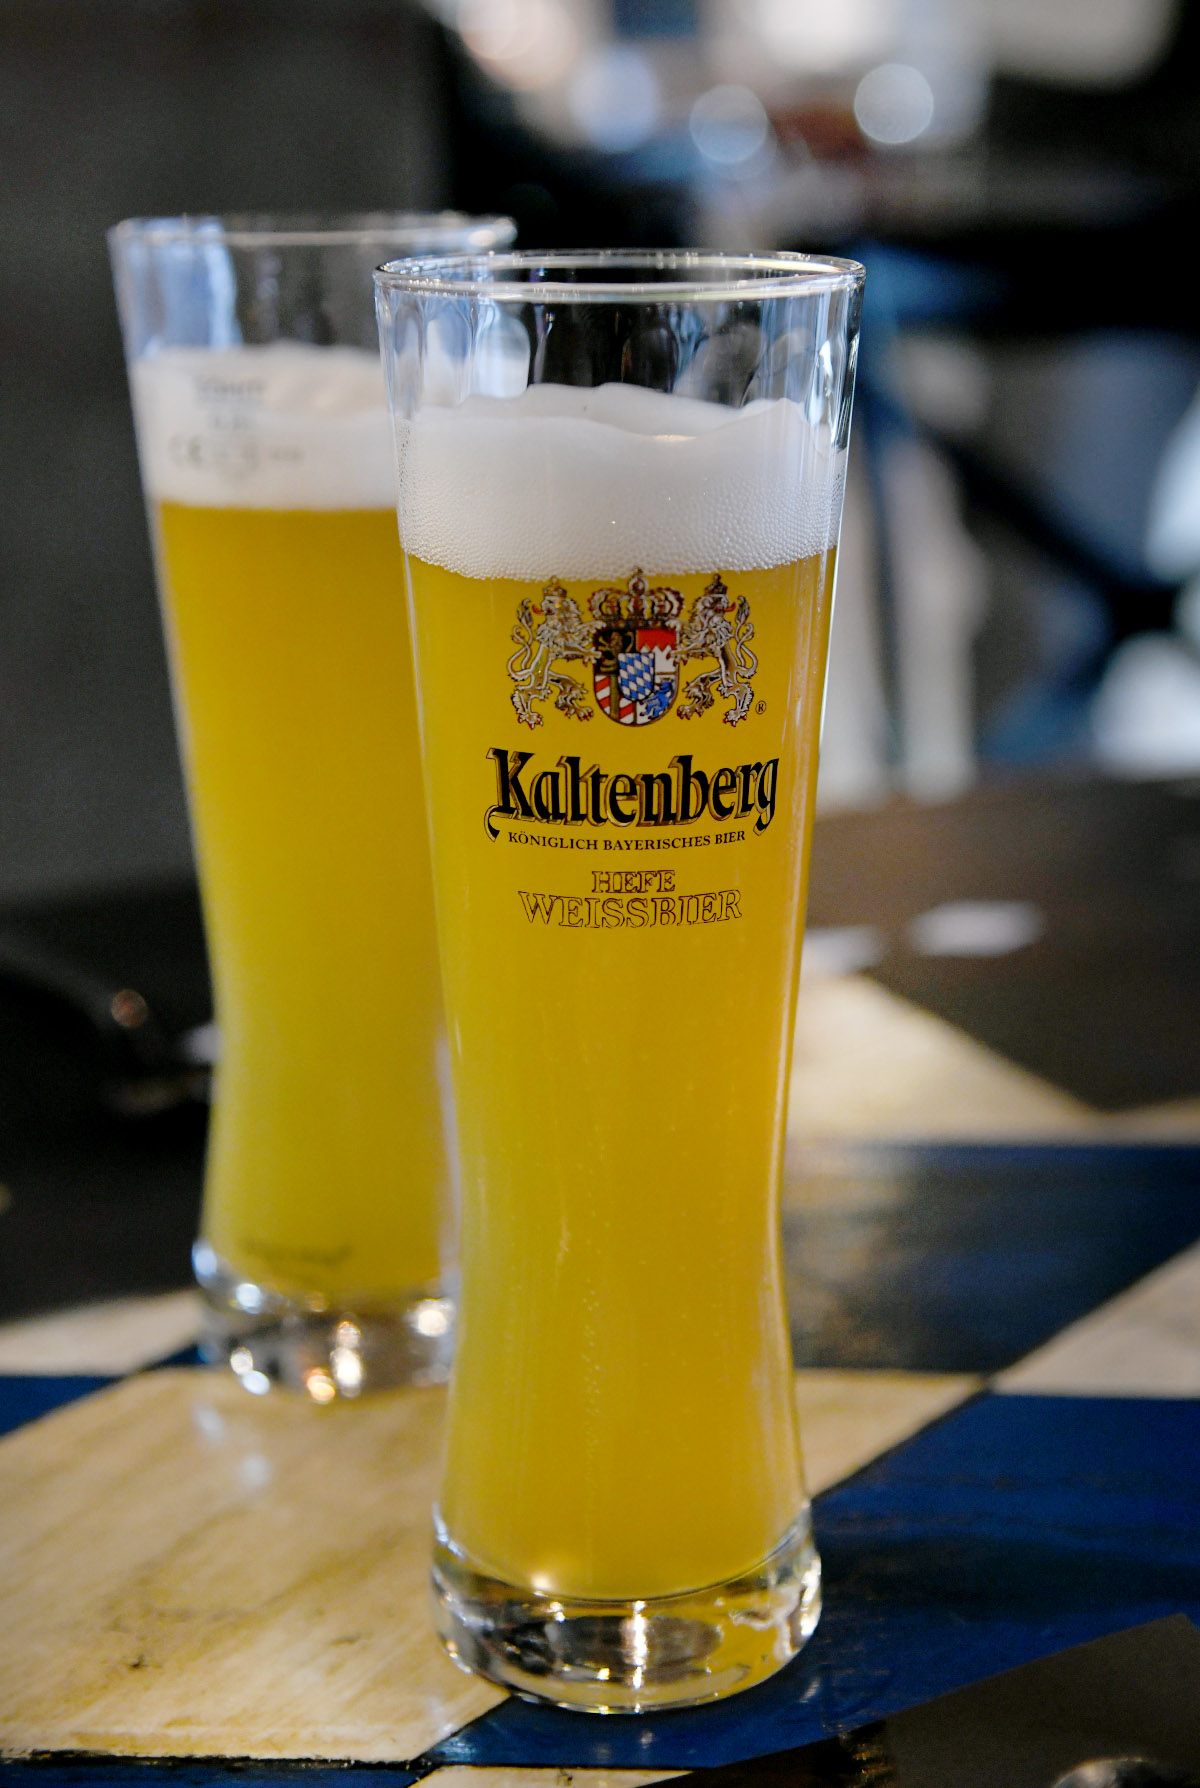 Extravagant recenzije: posjetile smo mjesto gdje se hrana i pivo najbolje sljubljuju - Ludwig's Gastro Pub!